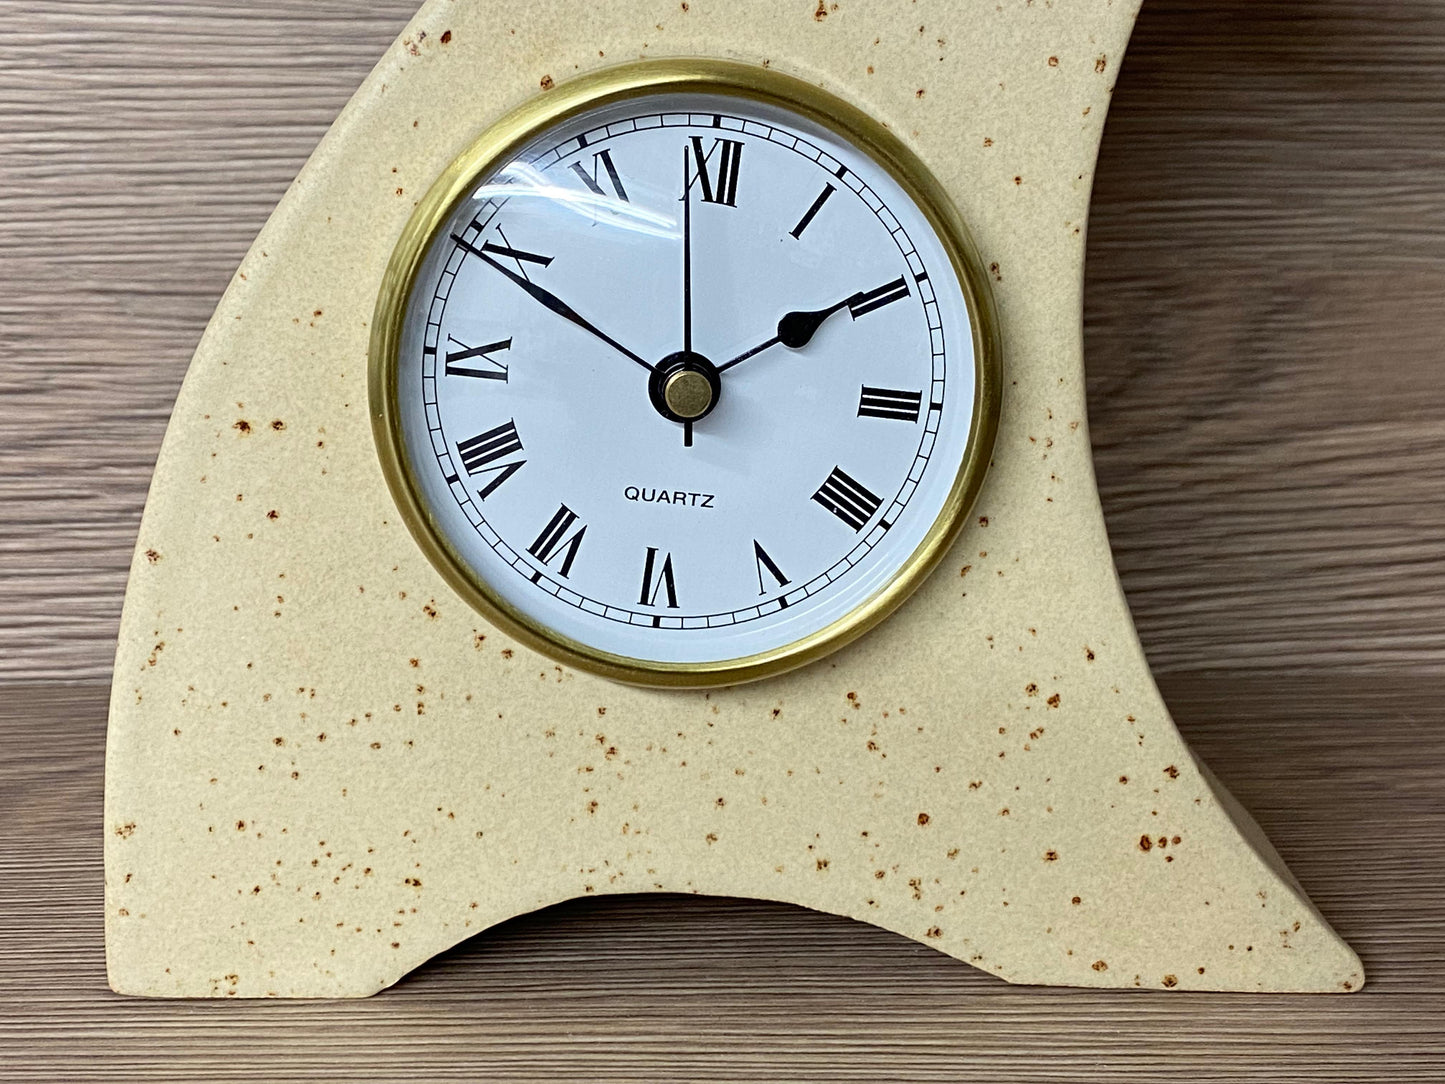 Ceramic Mantel Clock with Enclosed Face